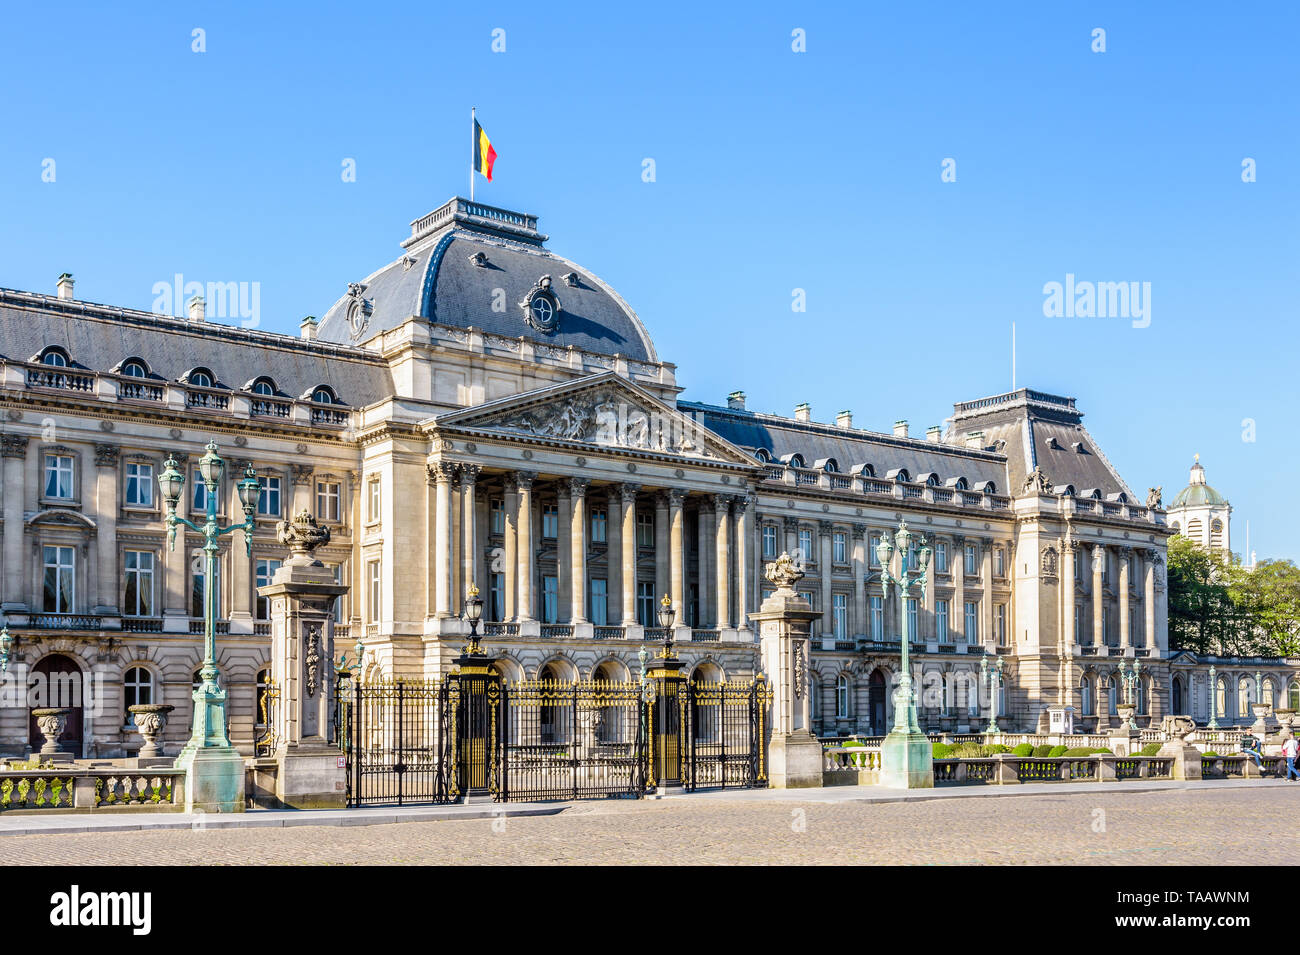 Grille et colonnade de la façade du Palais Royal de Bruxelles, le palais du Roi et Reine des Belges à Bruxelles, Belgique. Banque D'Images